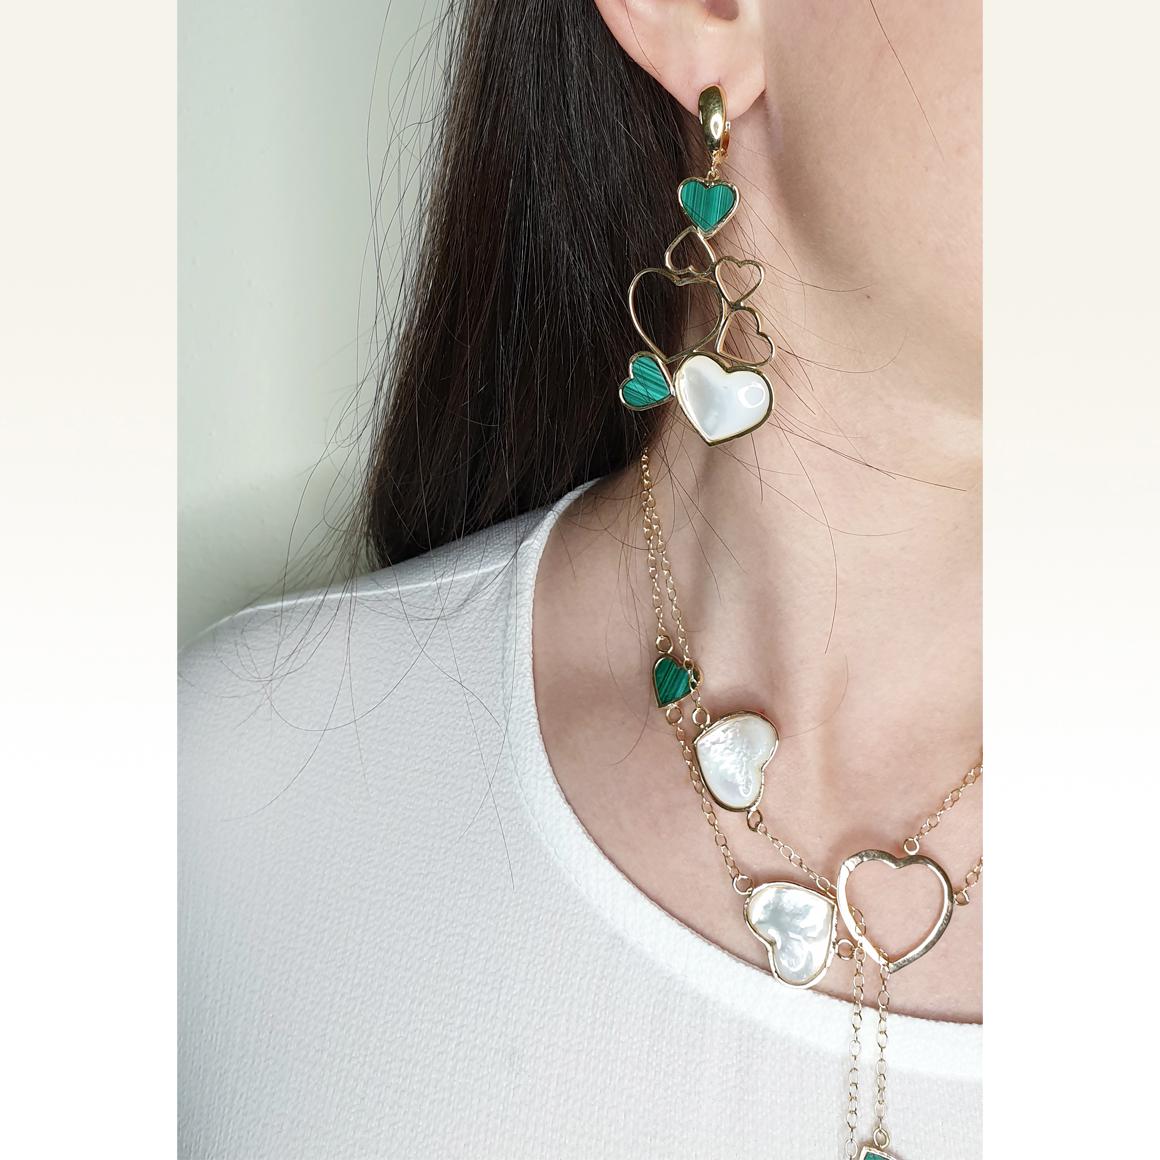 Boucles d'oreilles fantaisie fabriquées à la main en Italie par Stanoppi Jewellery depuis 1948.    Boucles d'oreilles uniques 
Mère de perles cœur mm 12x18  et cœur en malachite mm7x10   g.18,20  

Tous les bijoux Stanoppi sont neufs et n'ont jamais